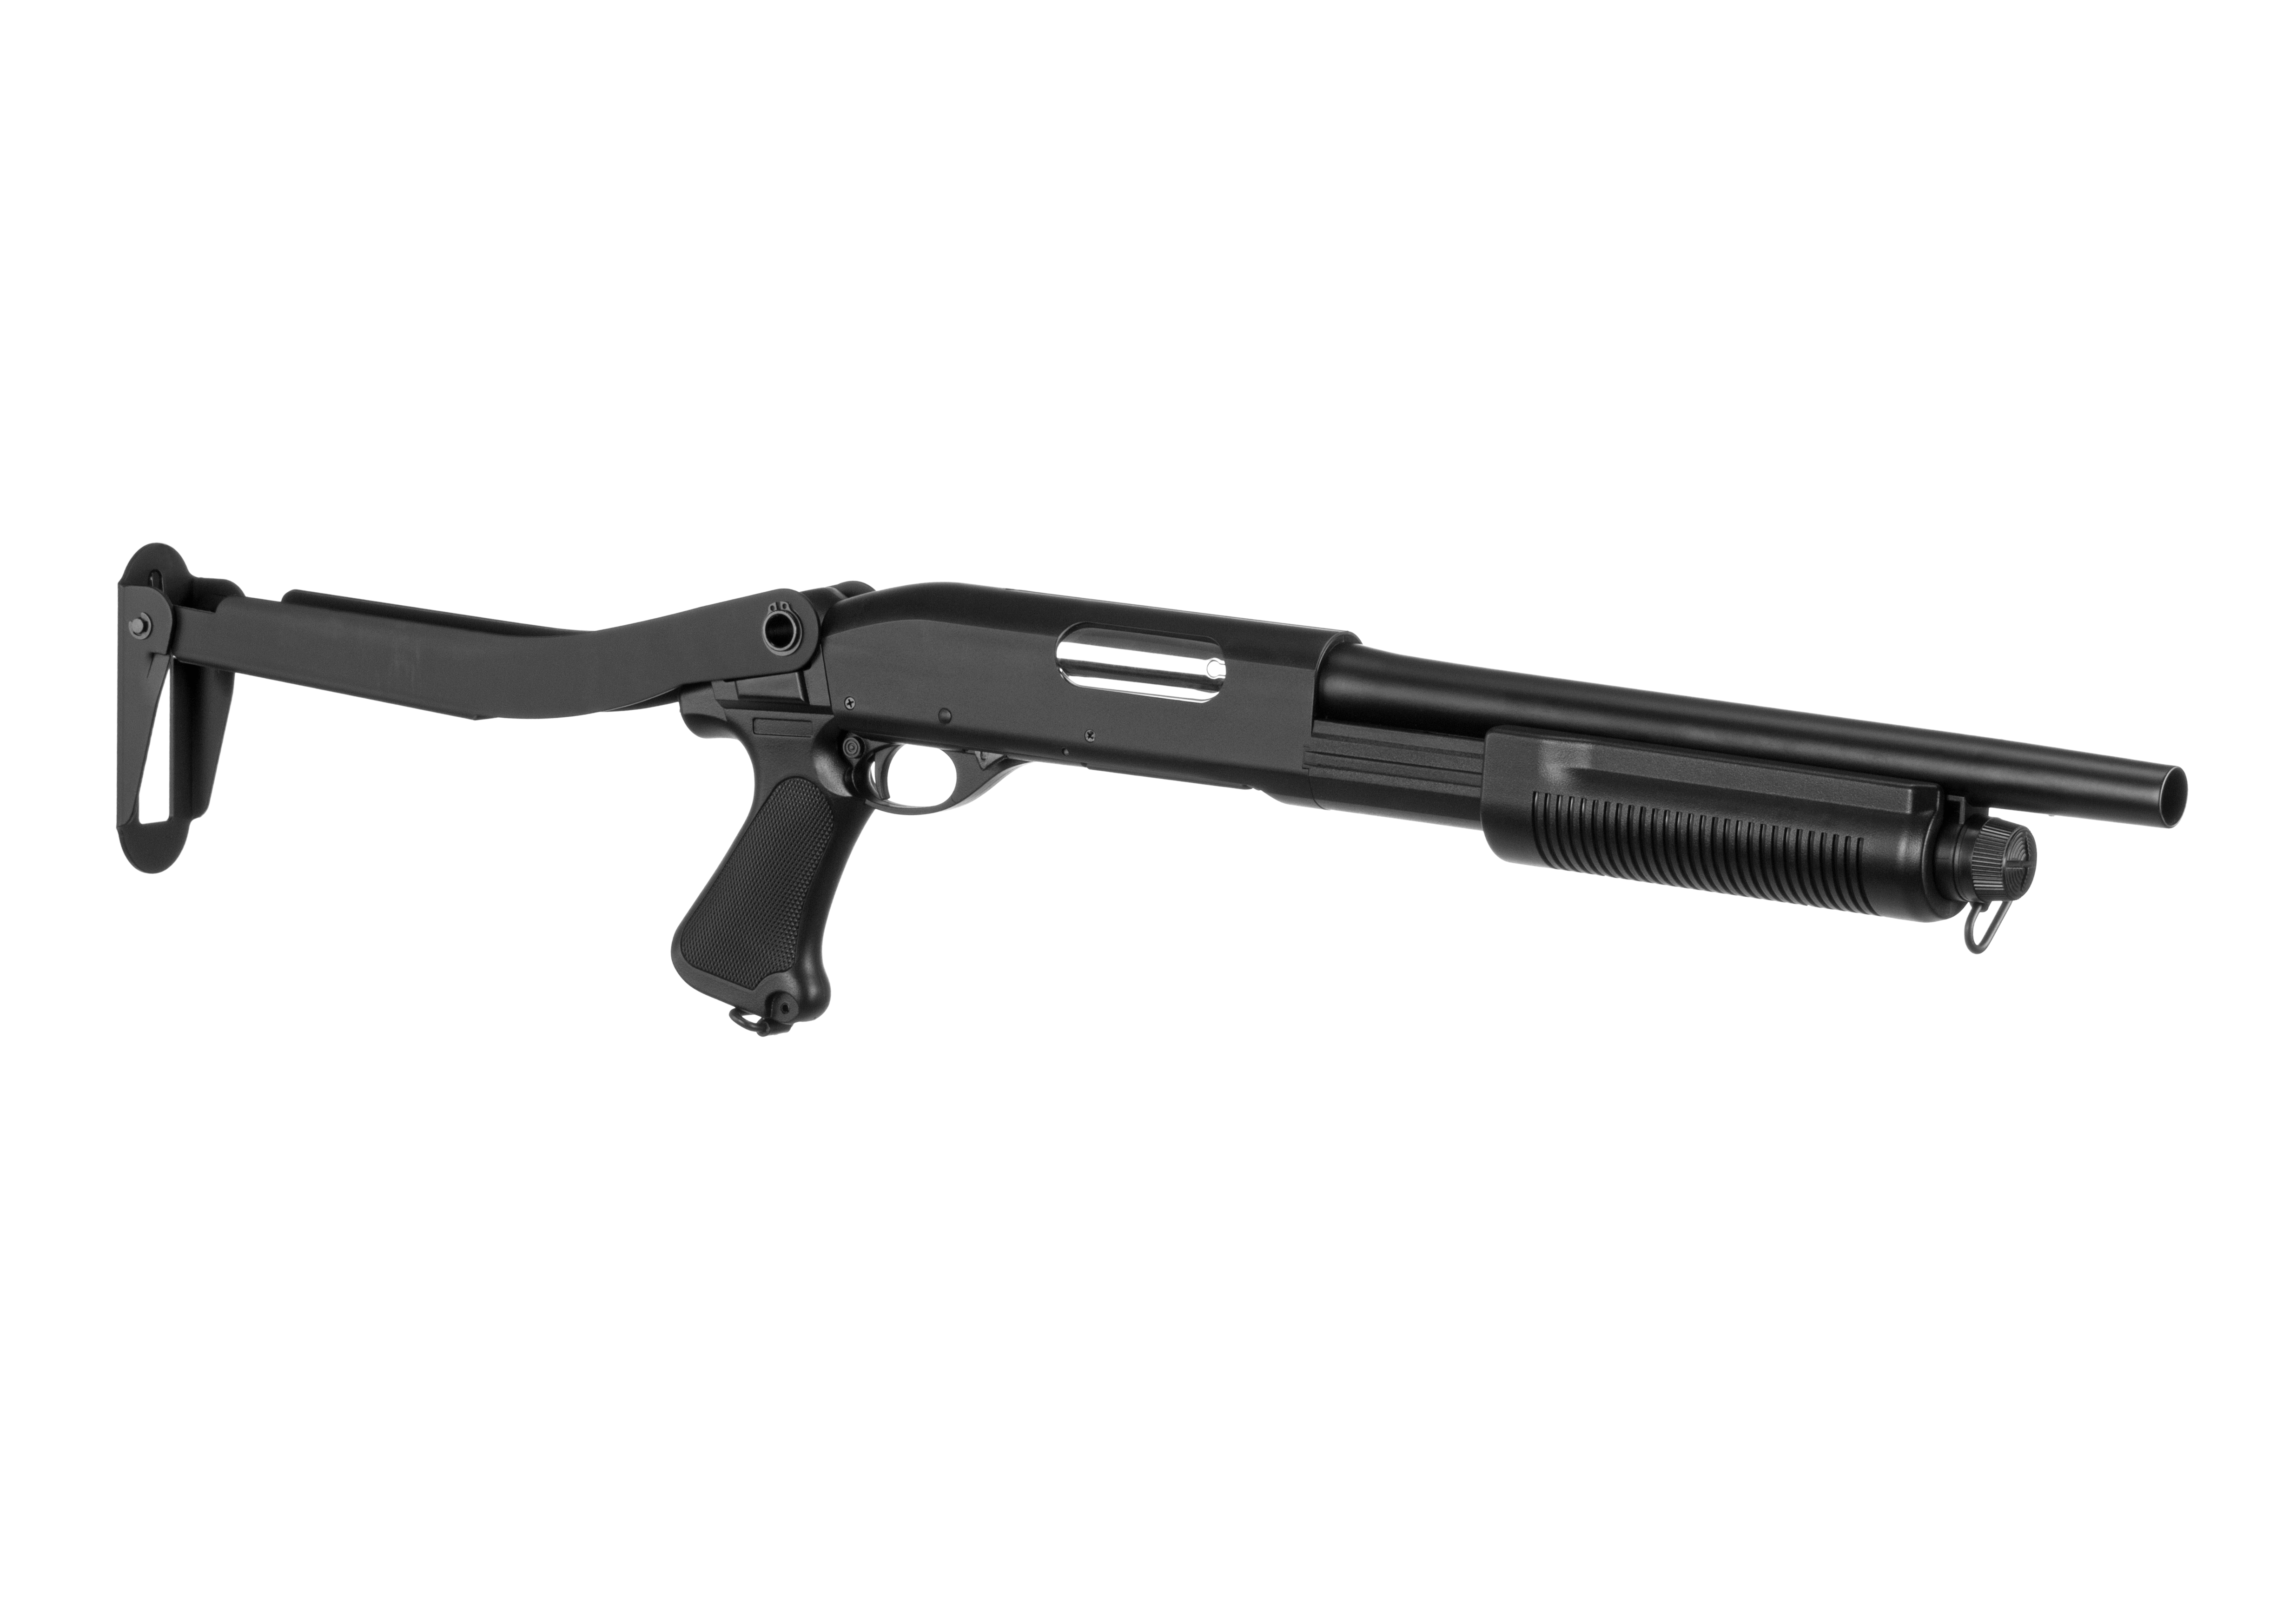 Airsoft Entrepot - Les nouveaux fusils à pompe M870 spring de chez